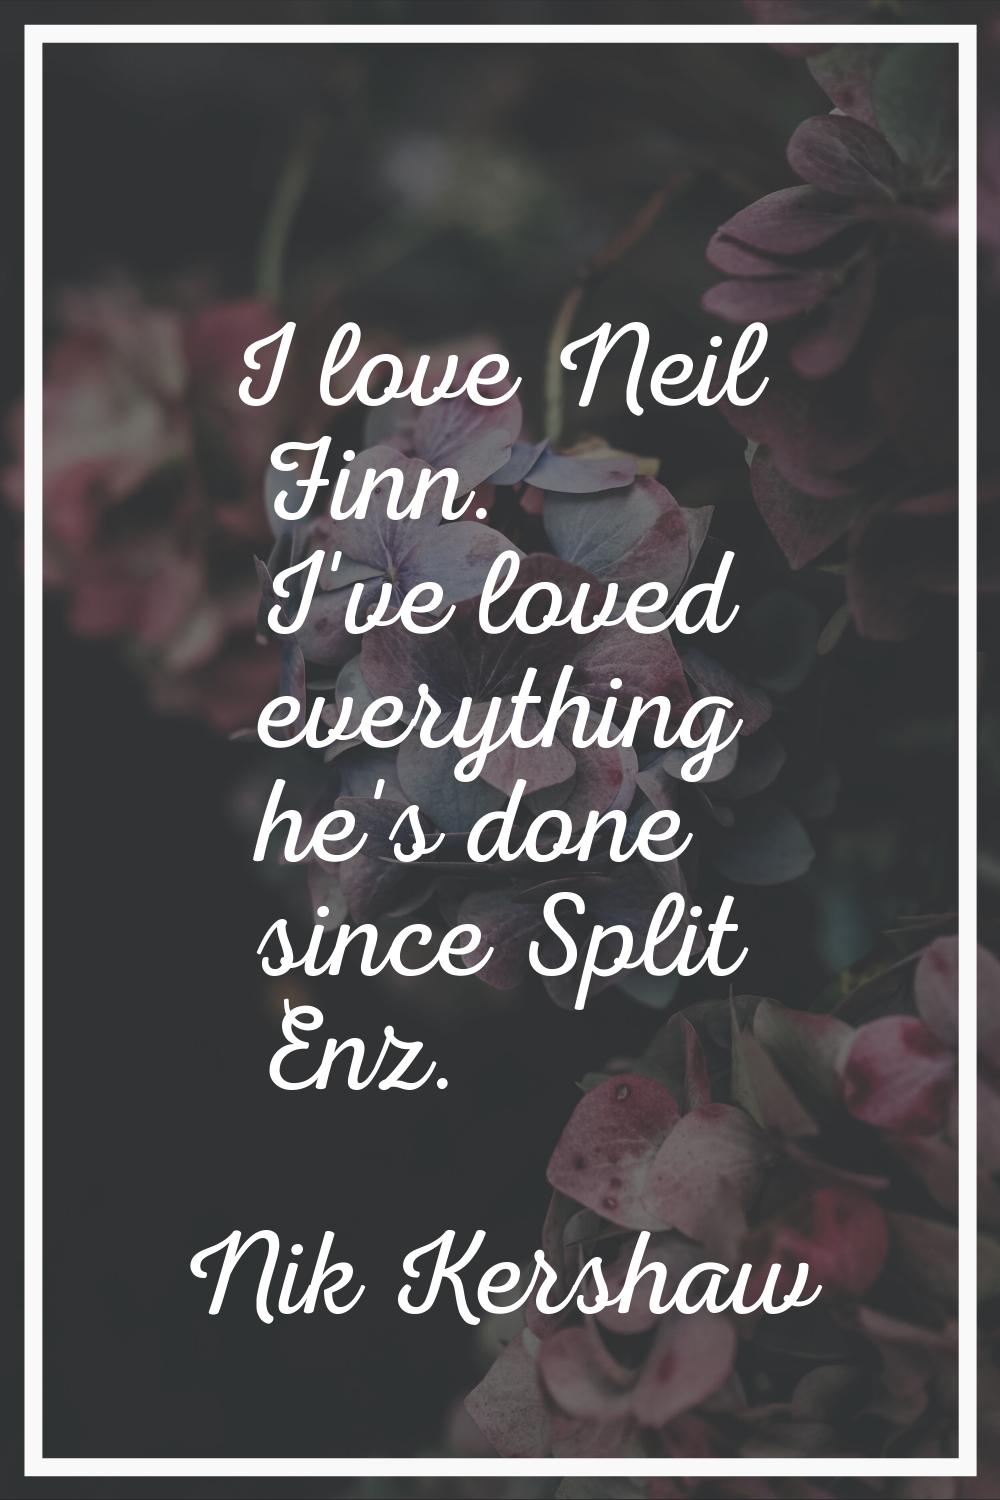 I love Neil Finn. I've loved everything he's done since Split Enz.